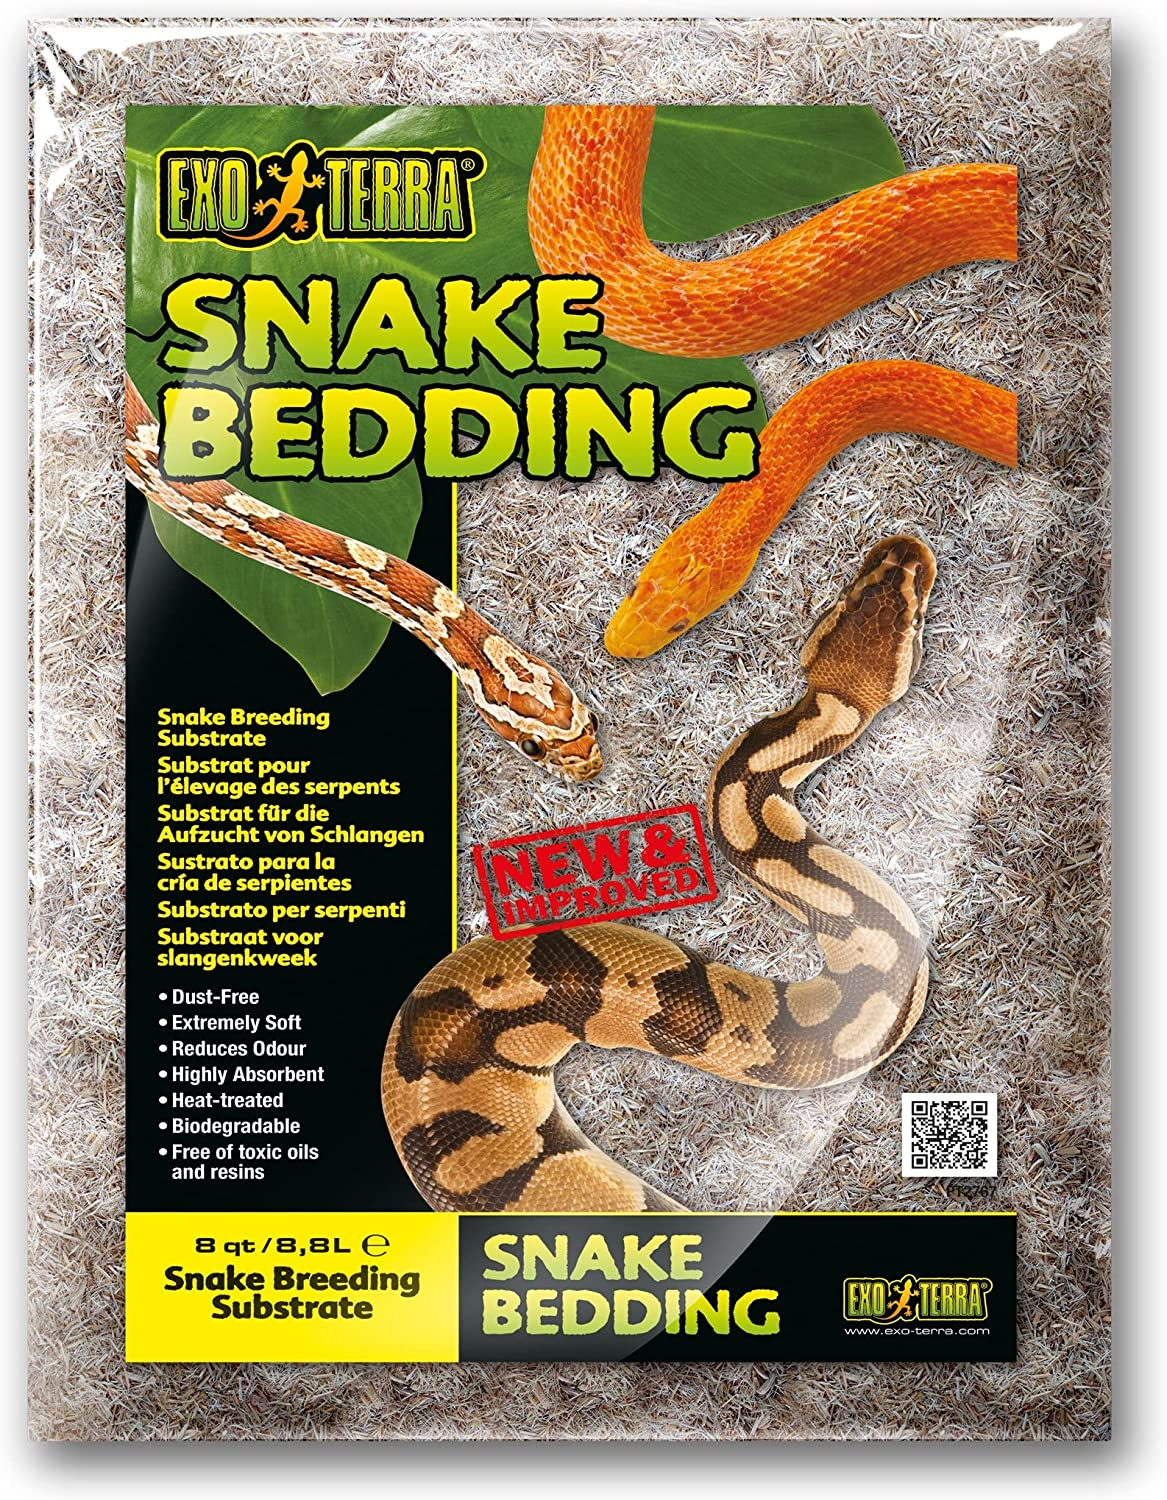 Snake Bedding - Natuurlijk biologisch afbreekbaar substraat voor reptielen